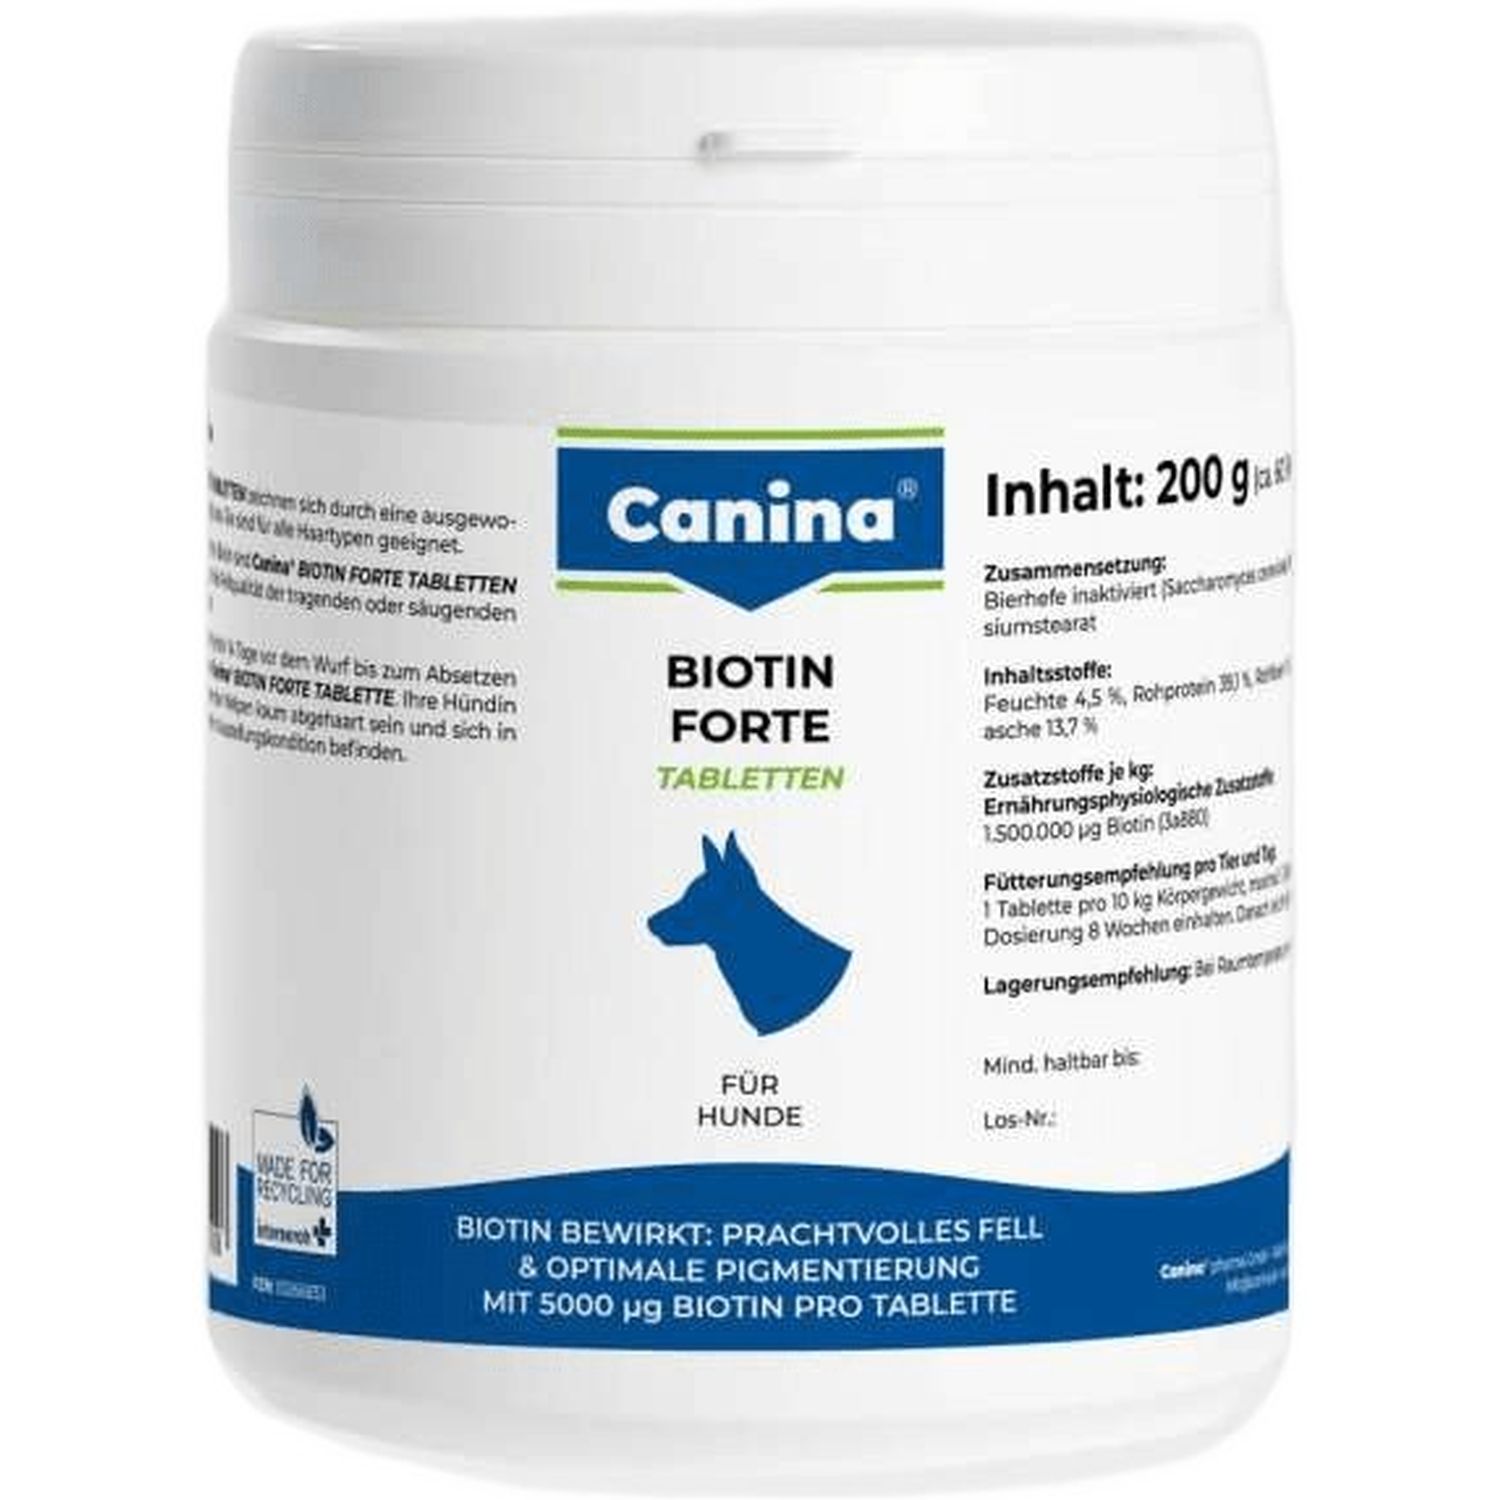 Витамины Canina Biotin Forte Tabletten для собак интенсивный курс для шерсти 200 г, 60 таблеток - фото 1